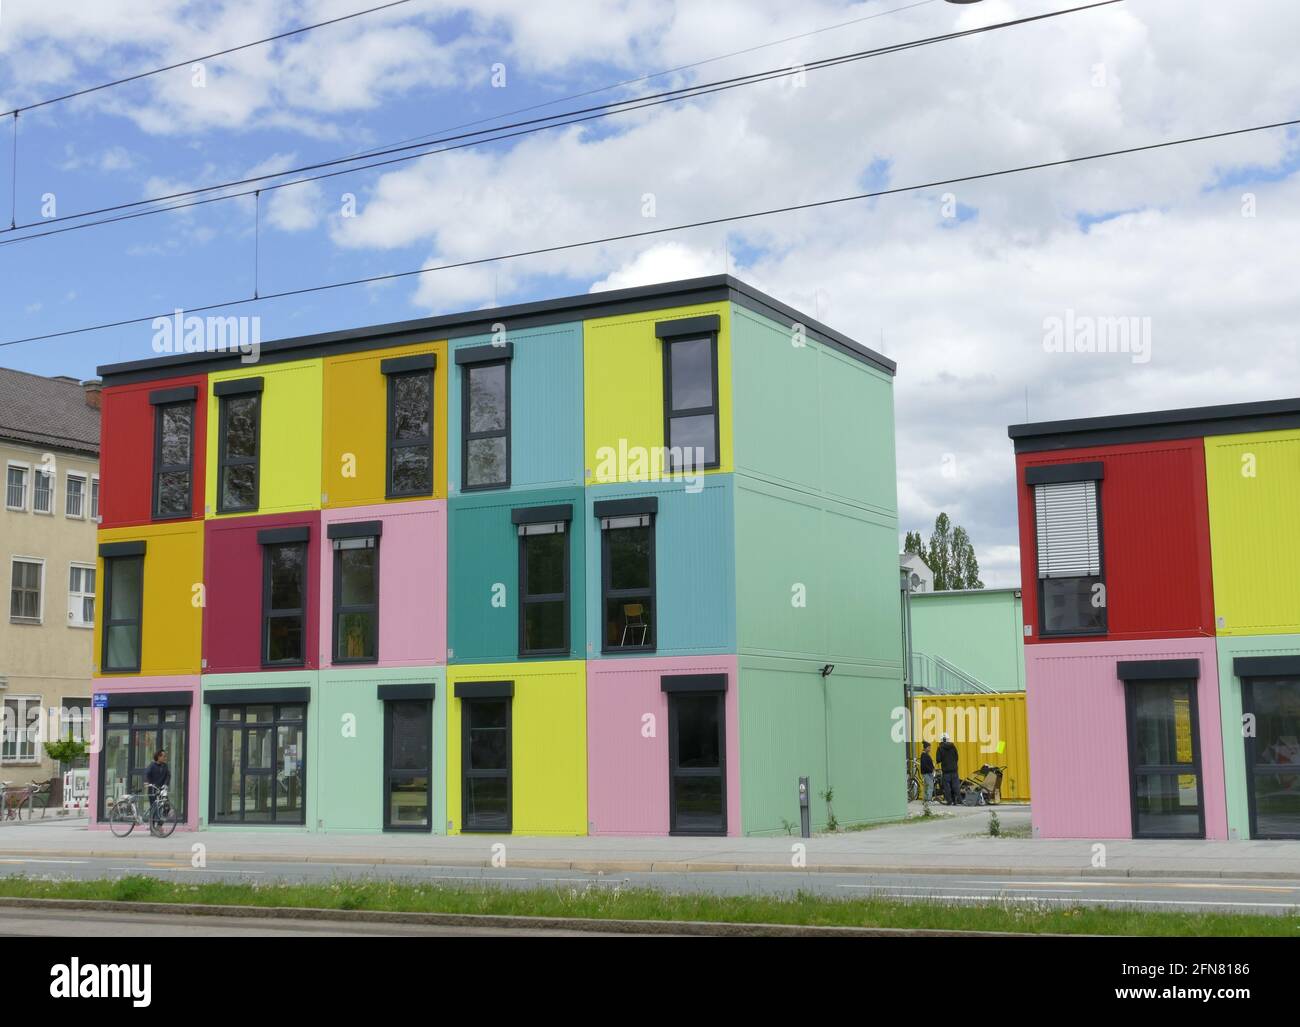 Wohnprojekt in München: Farbige Flachdachcontainer. Lebendes Projekt, genannt kreatives Viertel. Raum für Künstler, Musiker etc. Stockfoto